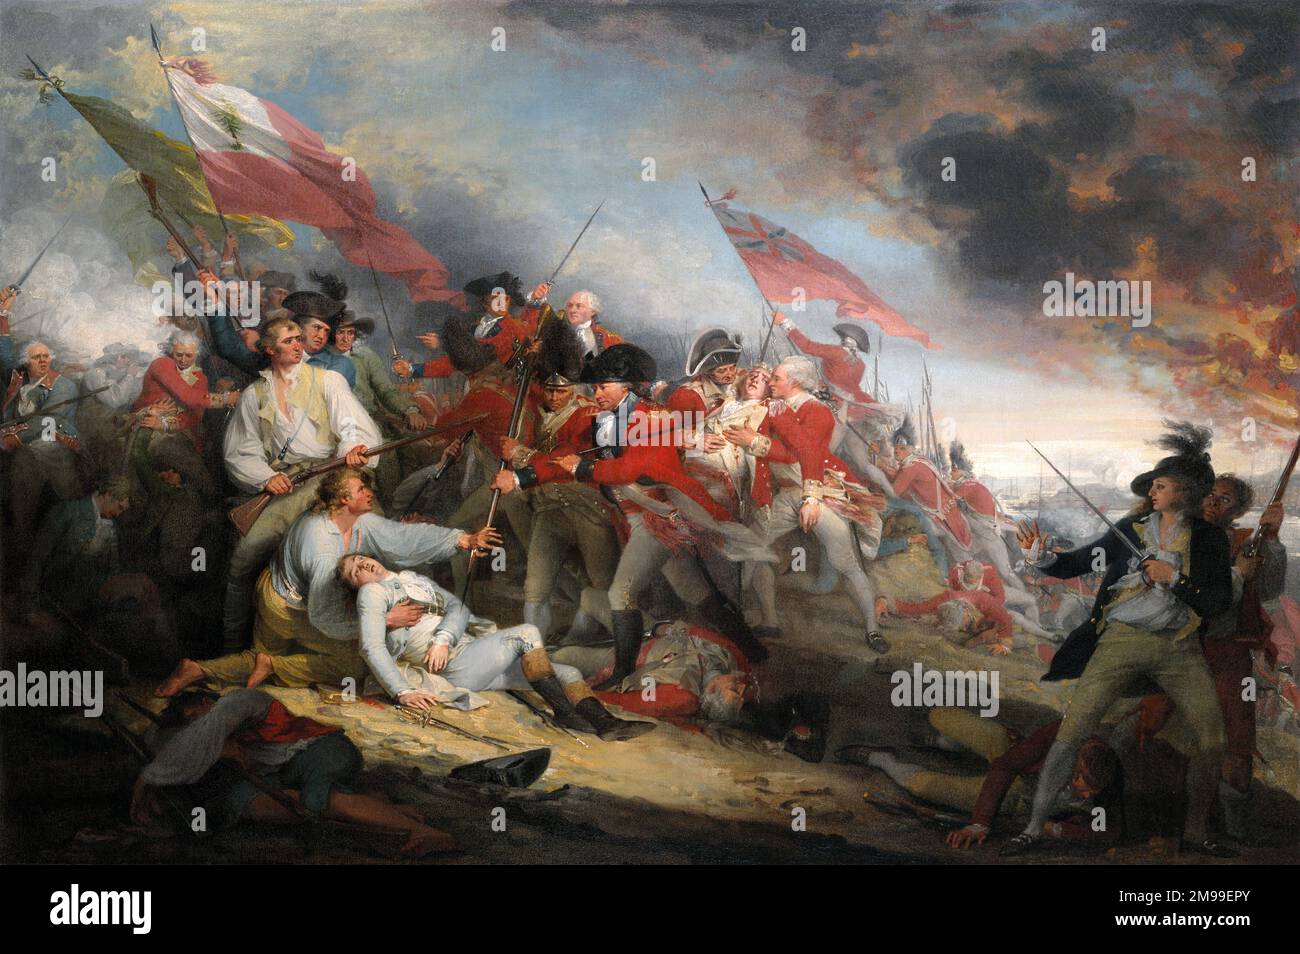 Die Schlacht von Bunker Hill, 17. Juni 1775 von John Trumbull, Öl auf Leinwand, 1786. Das Gemälde zeigt den Moment, als der amerikanische Major General Joseph Warren tödlich von einer Musketen-Kugel verwundet wurde und vor dem Bajonett des britischen Major John Small bewahrt wurde. Stockfoto